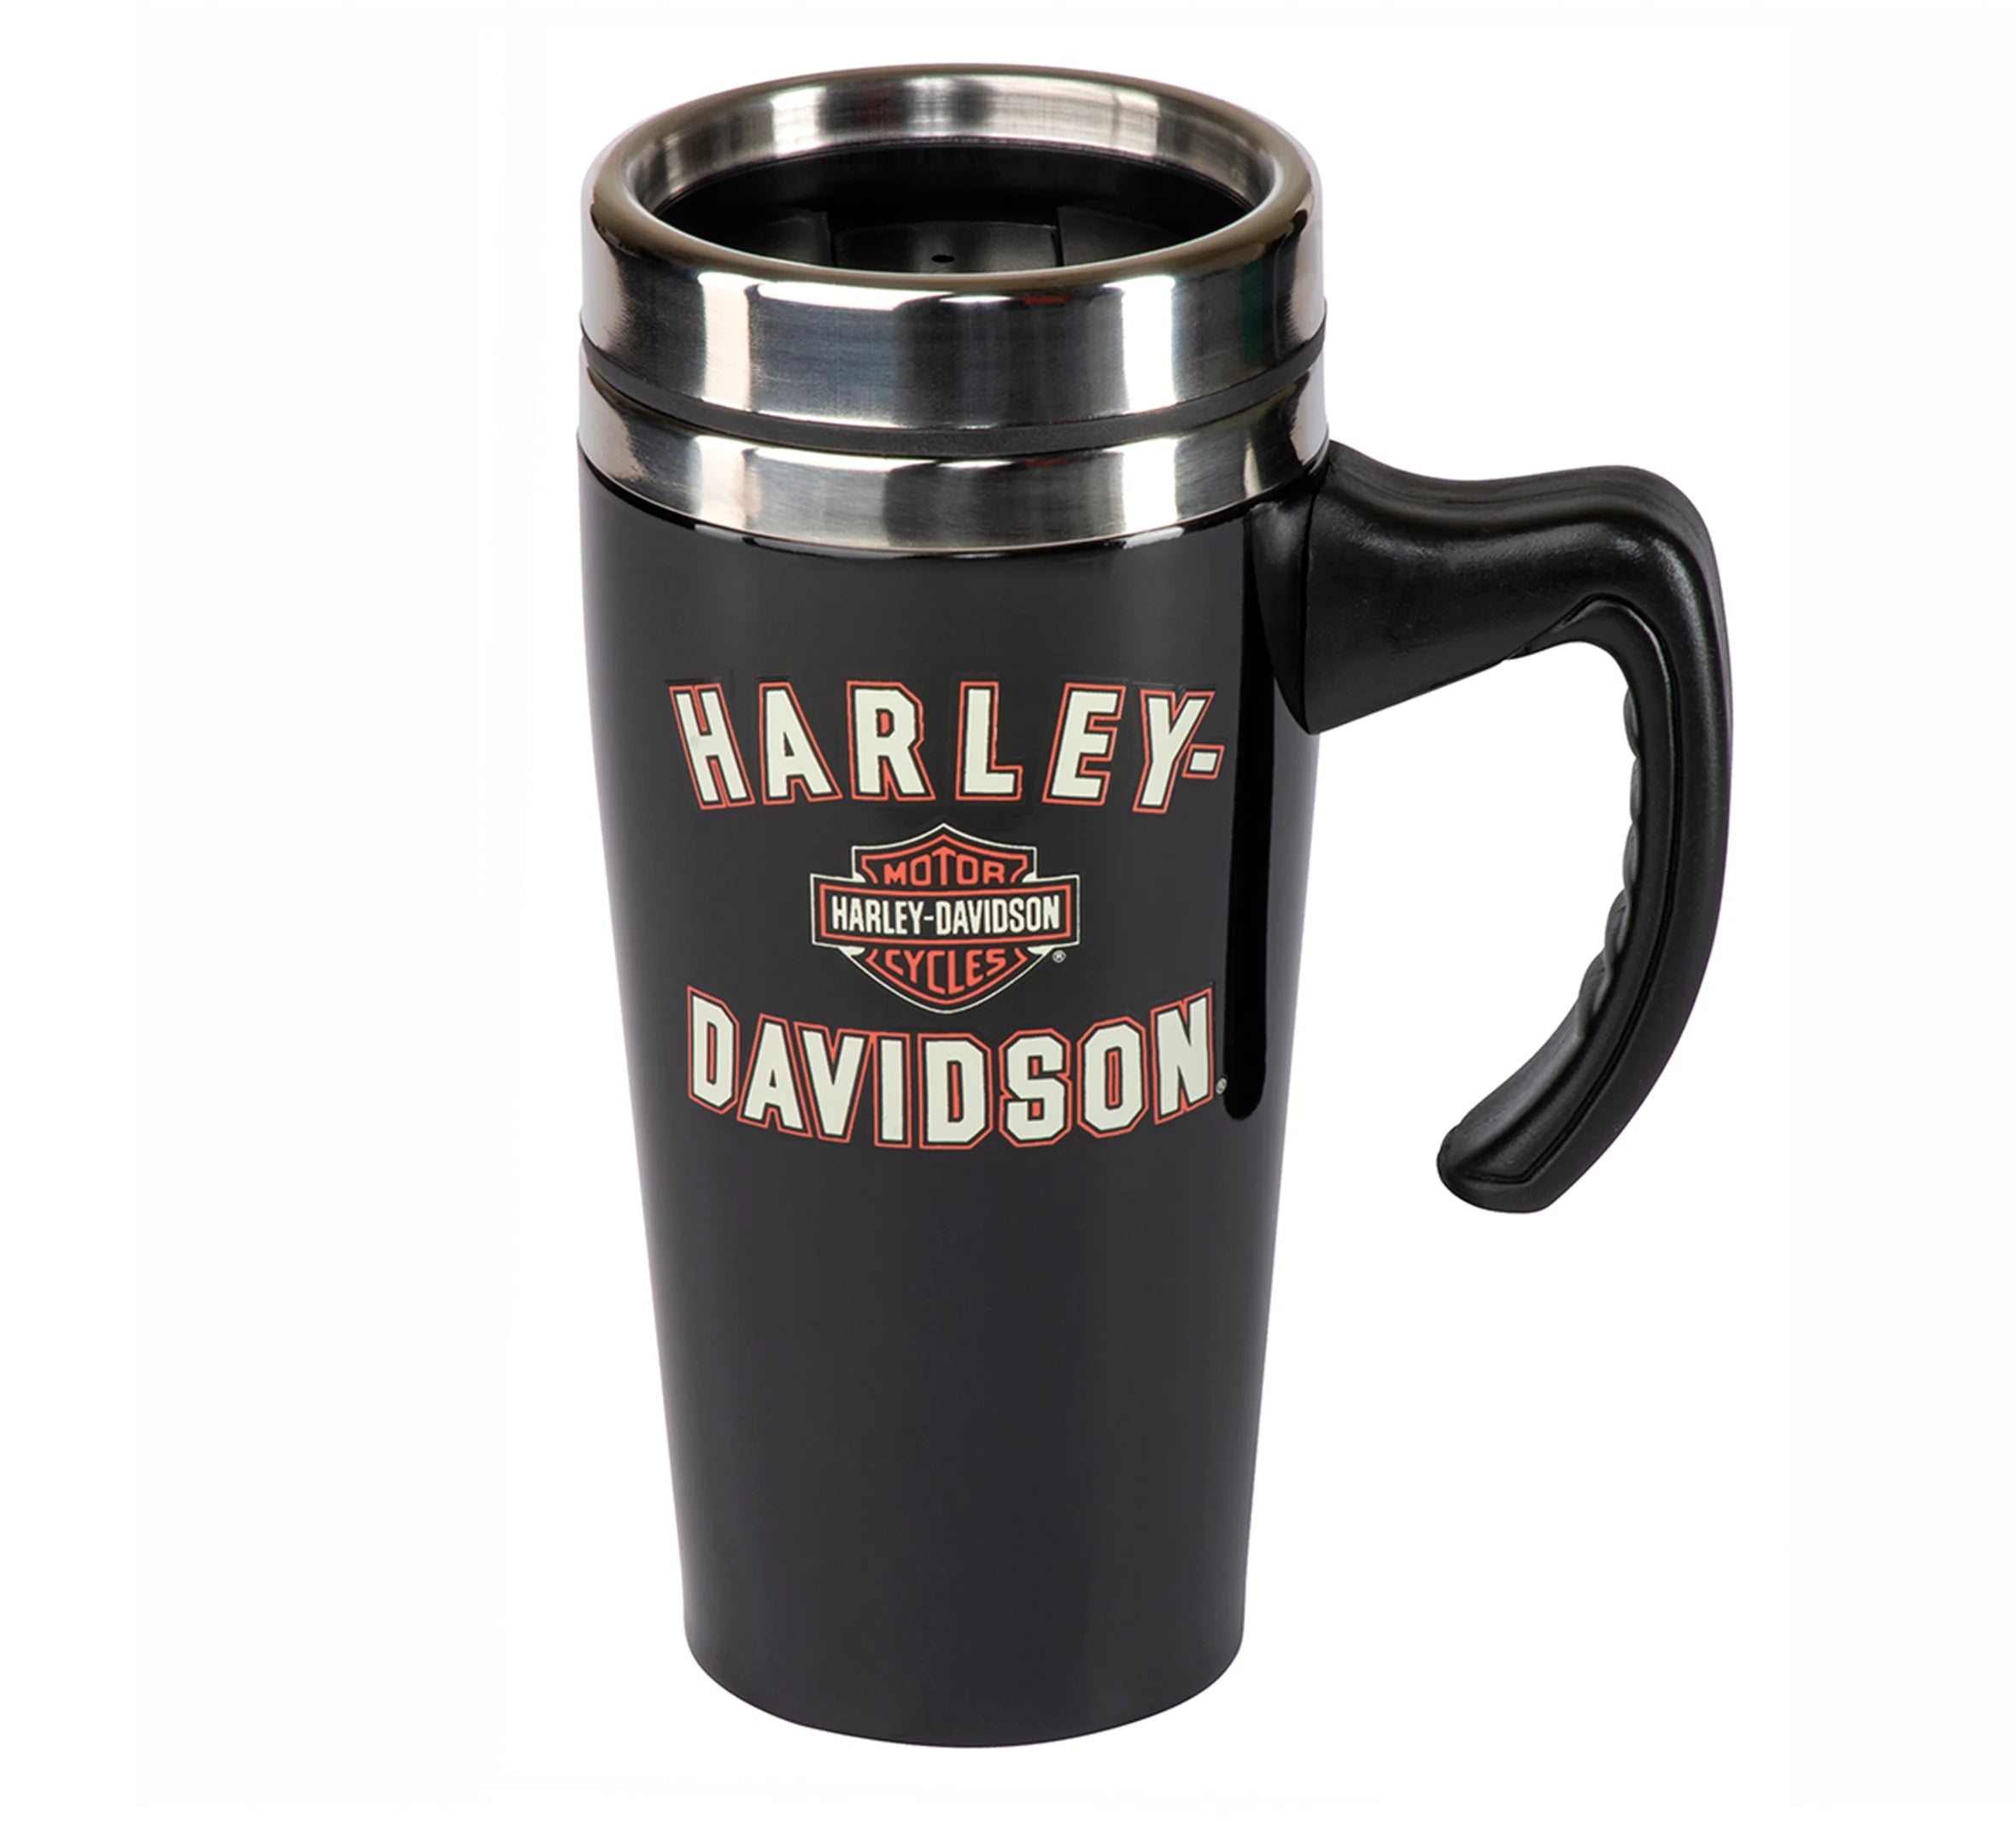 Harley Davidson Travel Mug